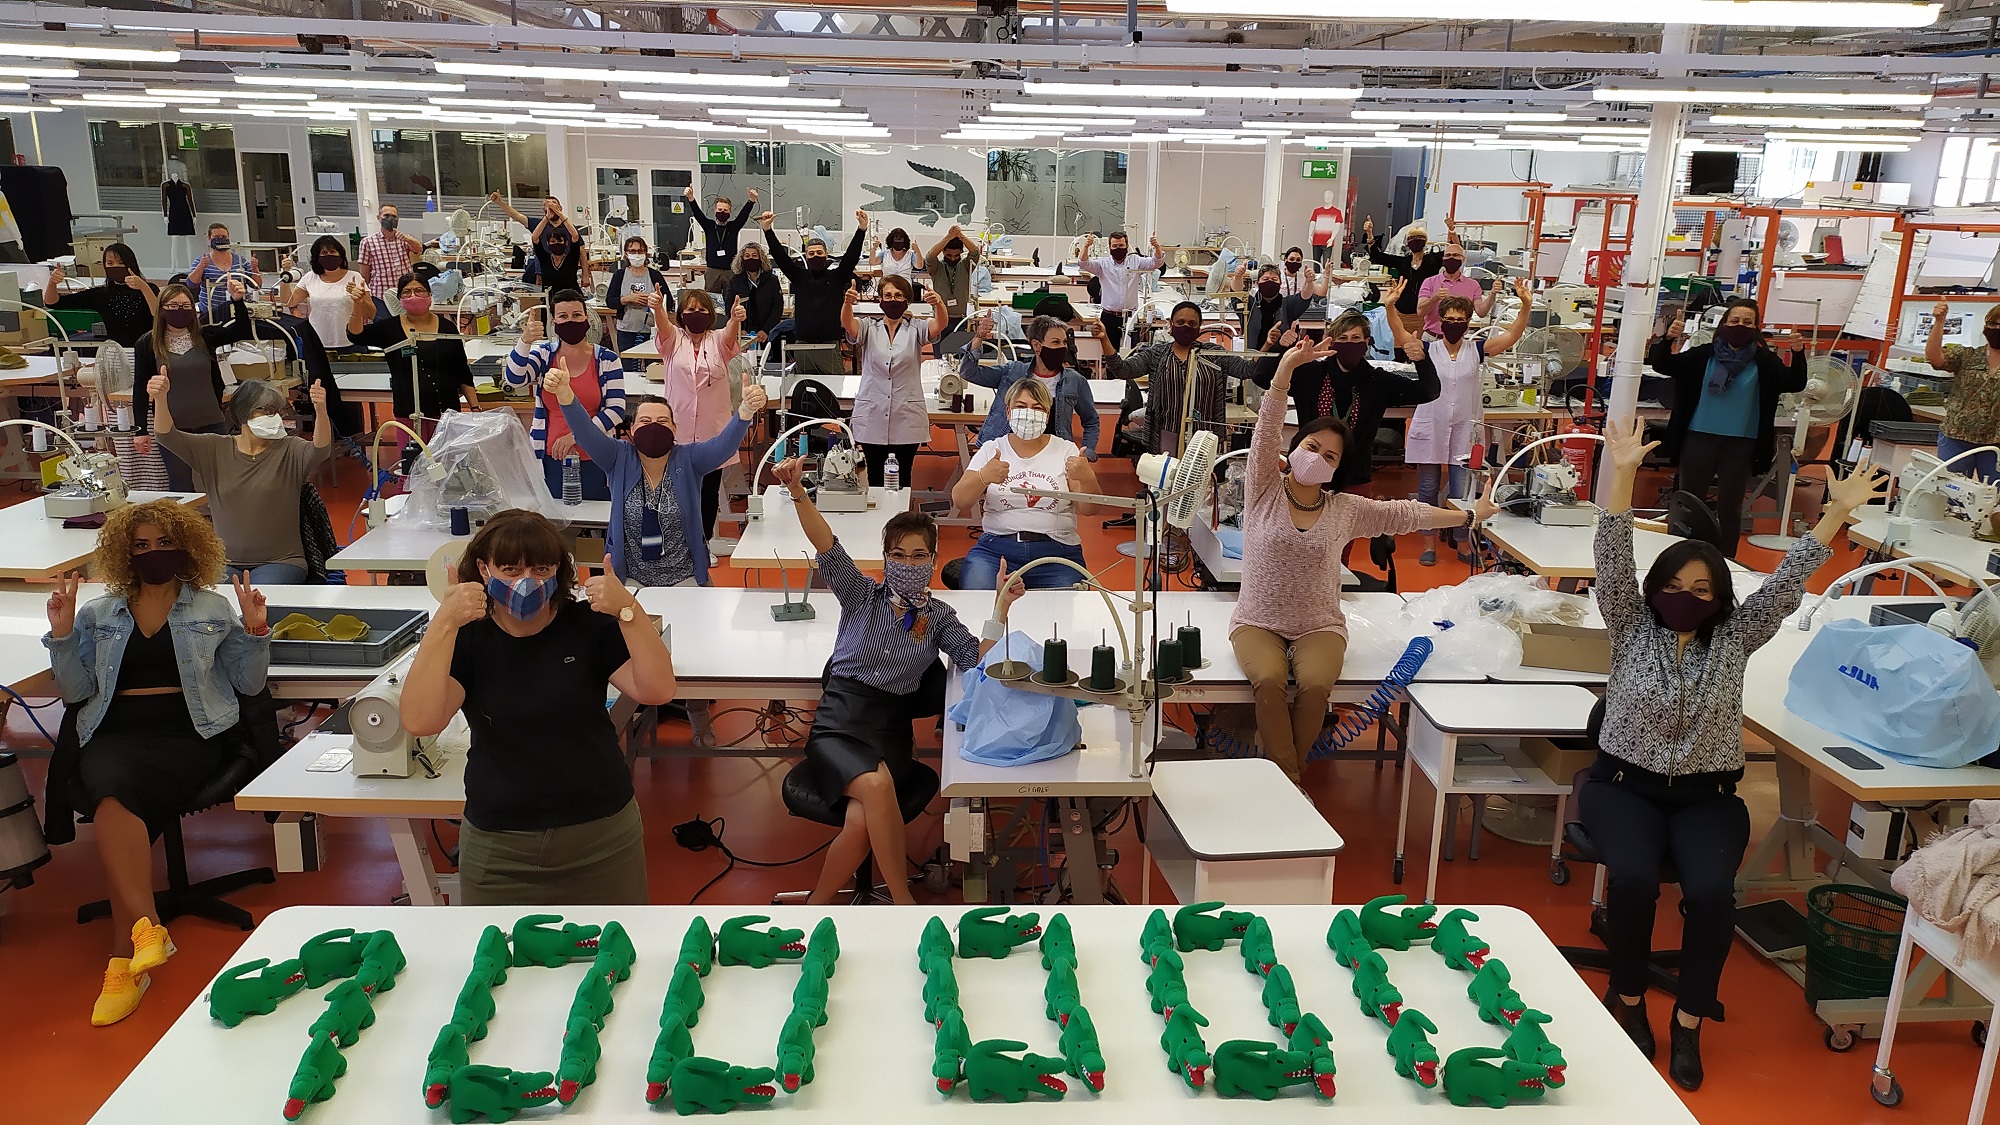 ภาพข่าว: Lacoste ผลิตหน้ากาก 100,000 ชิ้น ช่วยเหลือบุคลากรทางการแพทย์ในฝรั่งเศส